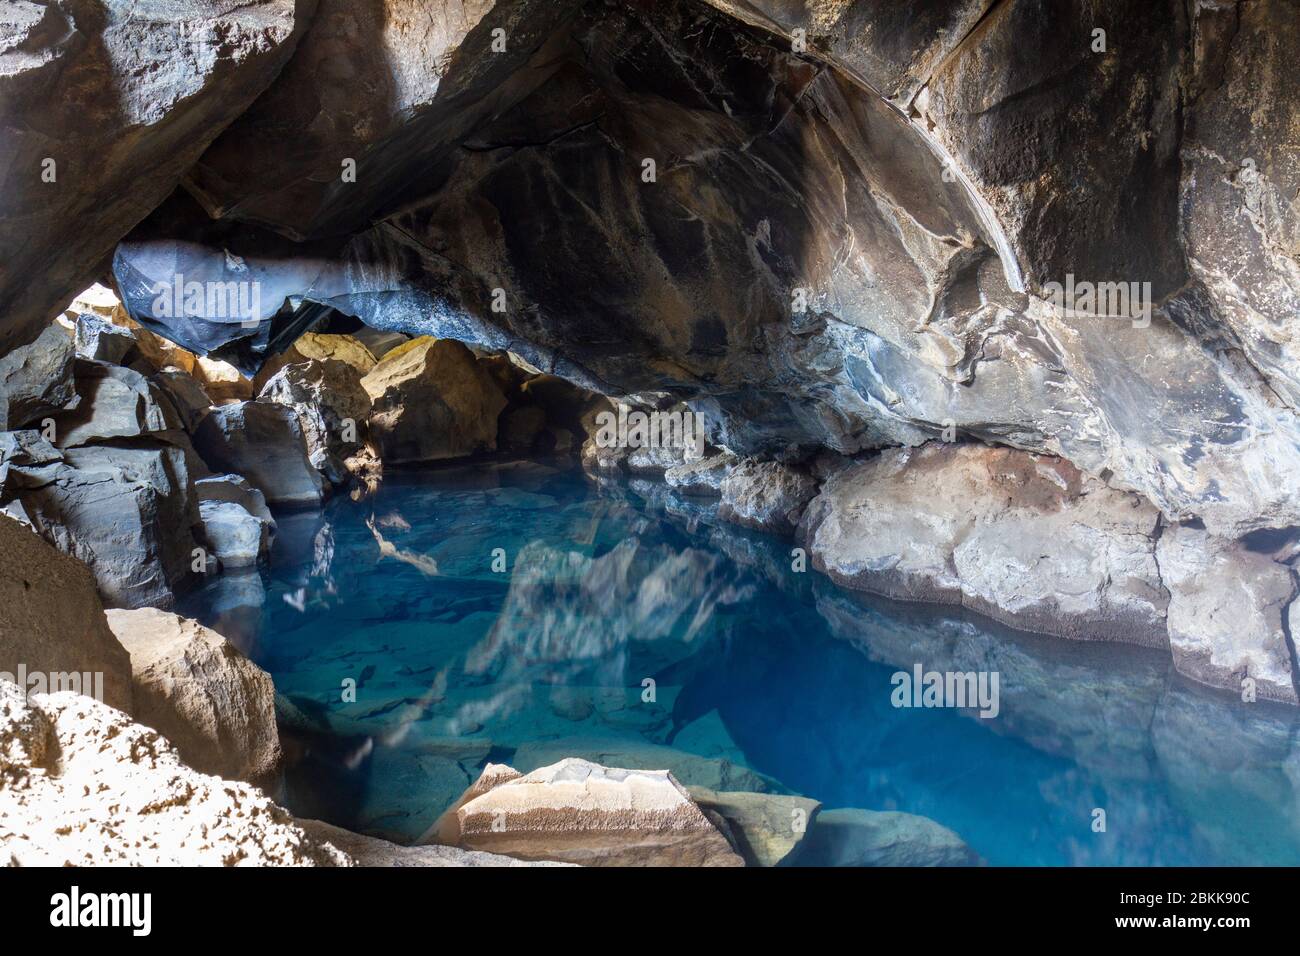 La grotta di Grjótagjá, una grotta di lava con una sorgente termale splendidamente limpida (descritta in "Trono di Spade"), Myvatn, Islanda. Foto Stock